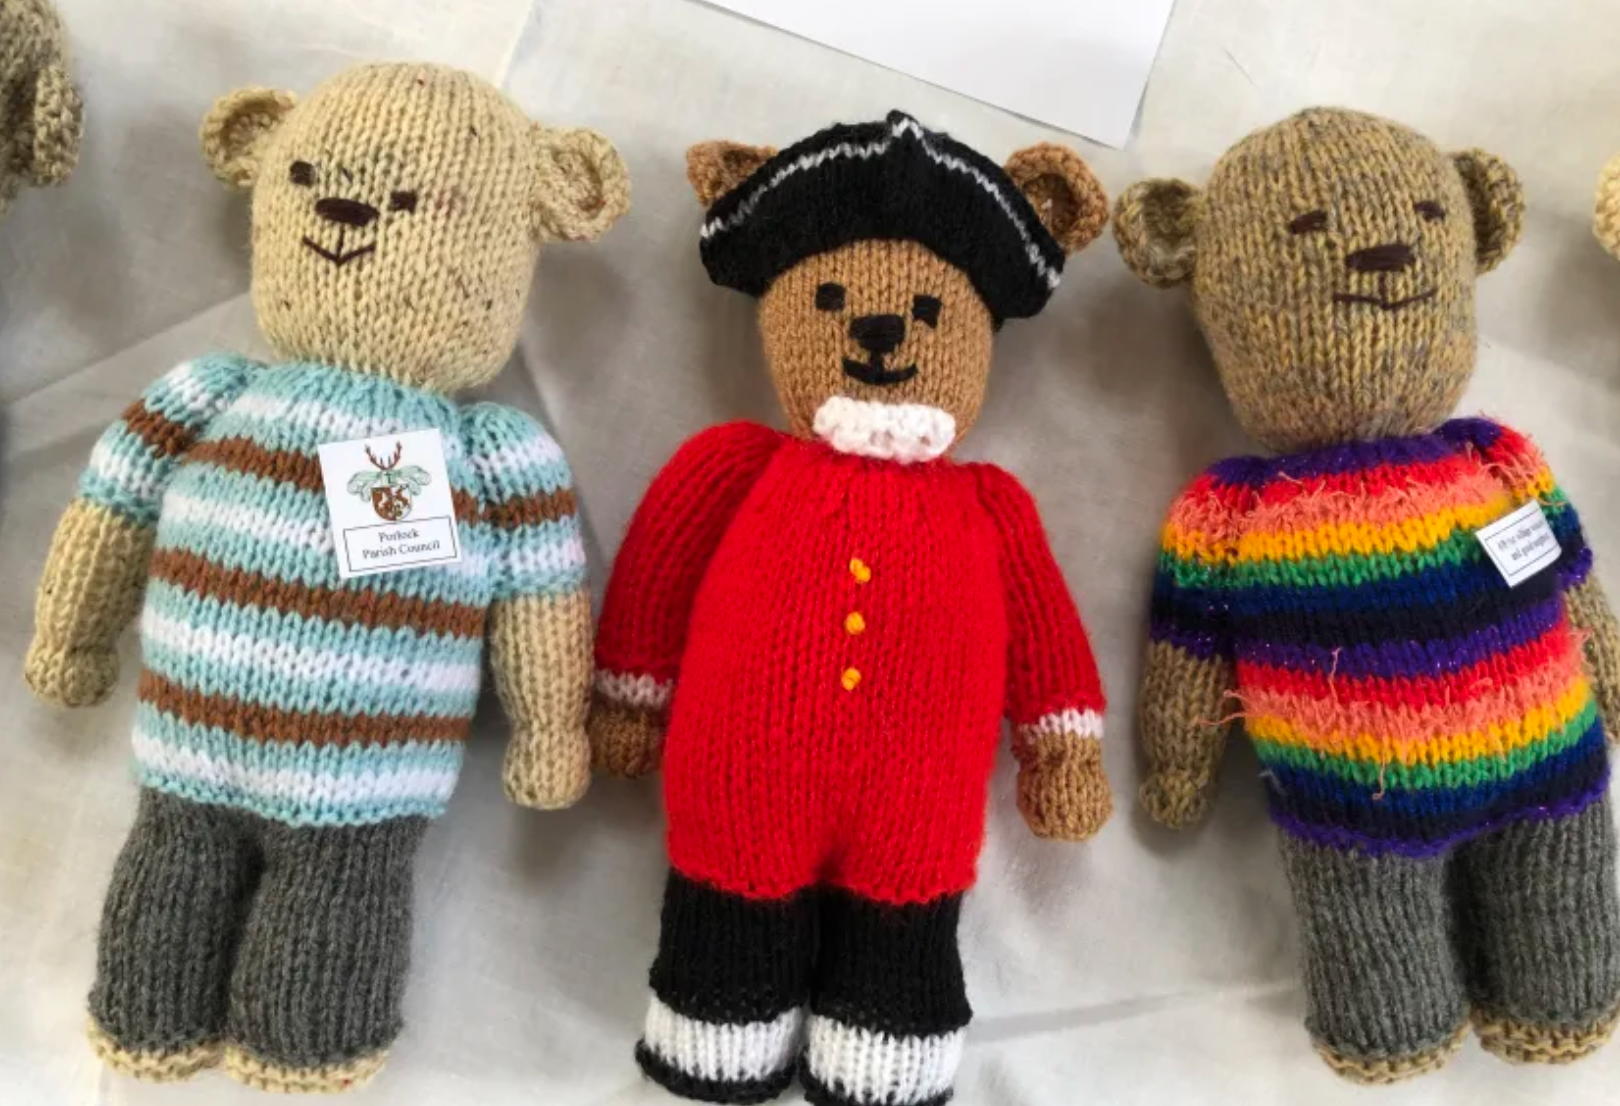 Mystery knitter creates 29 teddy bears